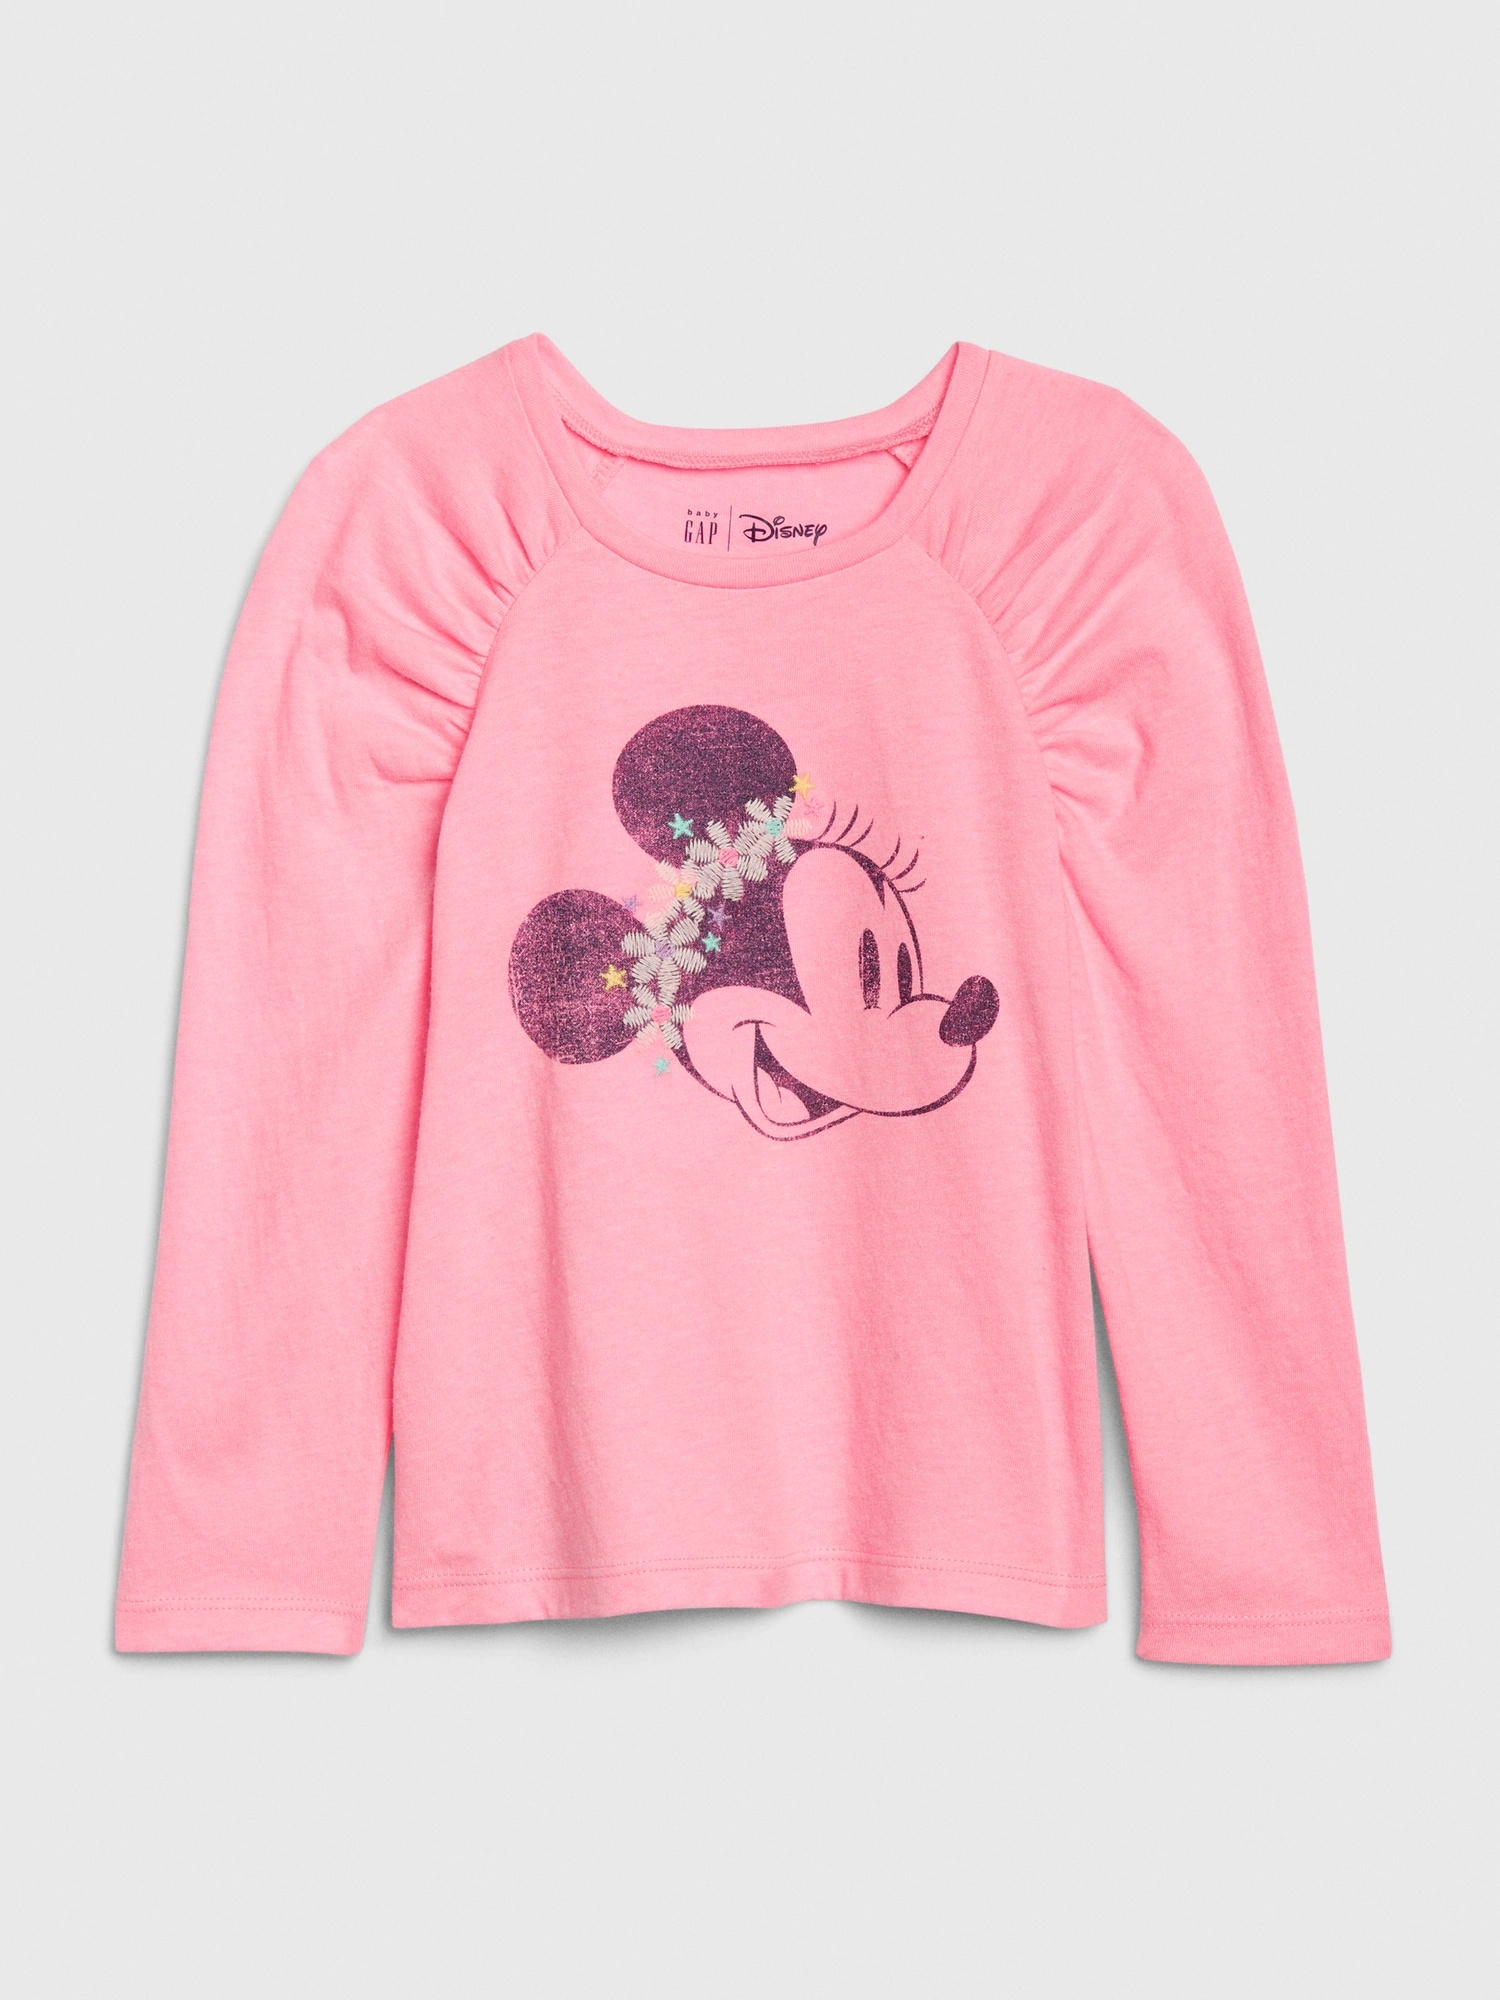 女幼童裝|Gap x Disney迪士尼聯名 米妮印花上衣-米妮老鼠圖案